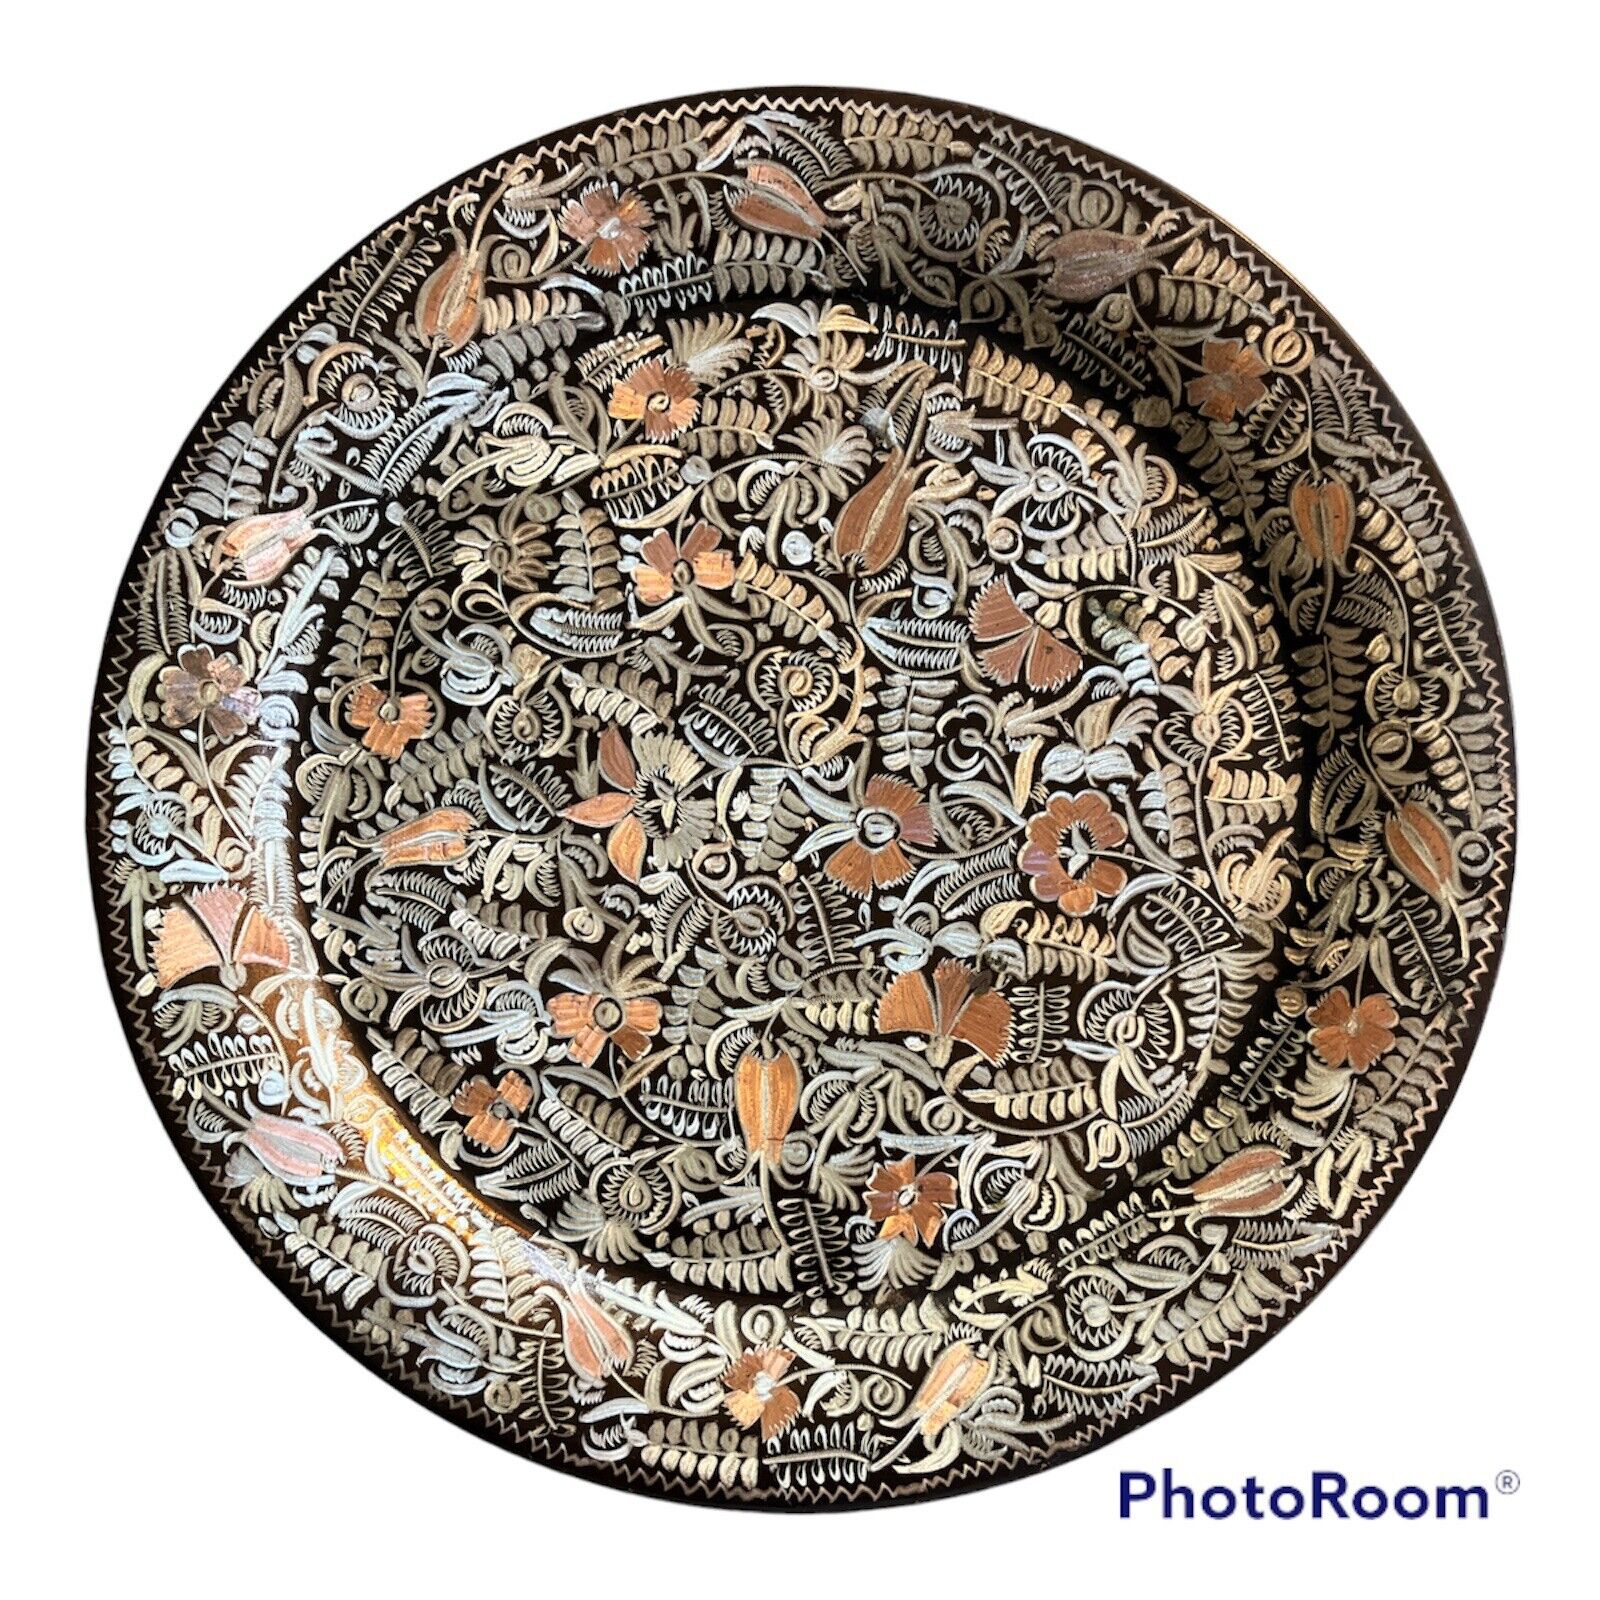 Erzincanlilar Turkey Etched Copper Plates Vintage Beautiful